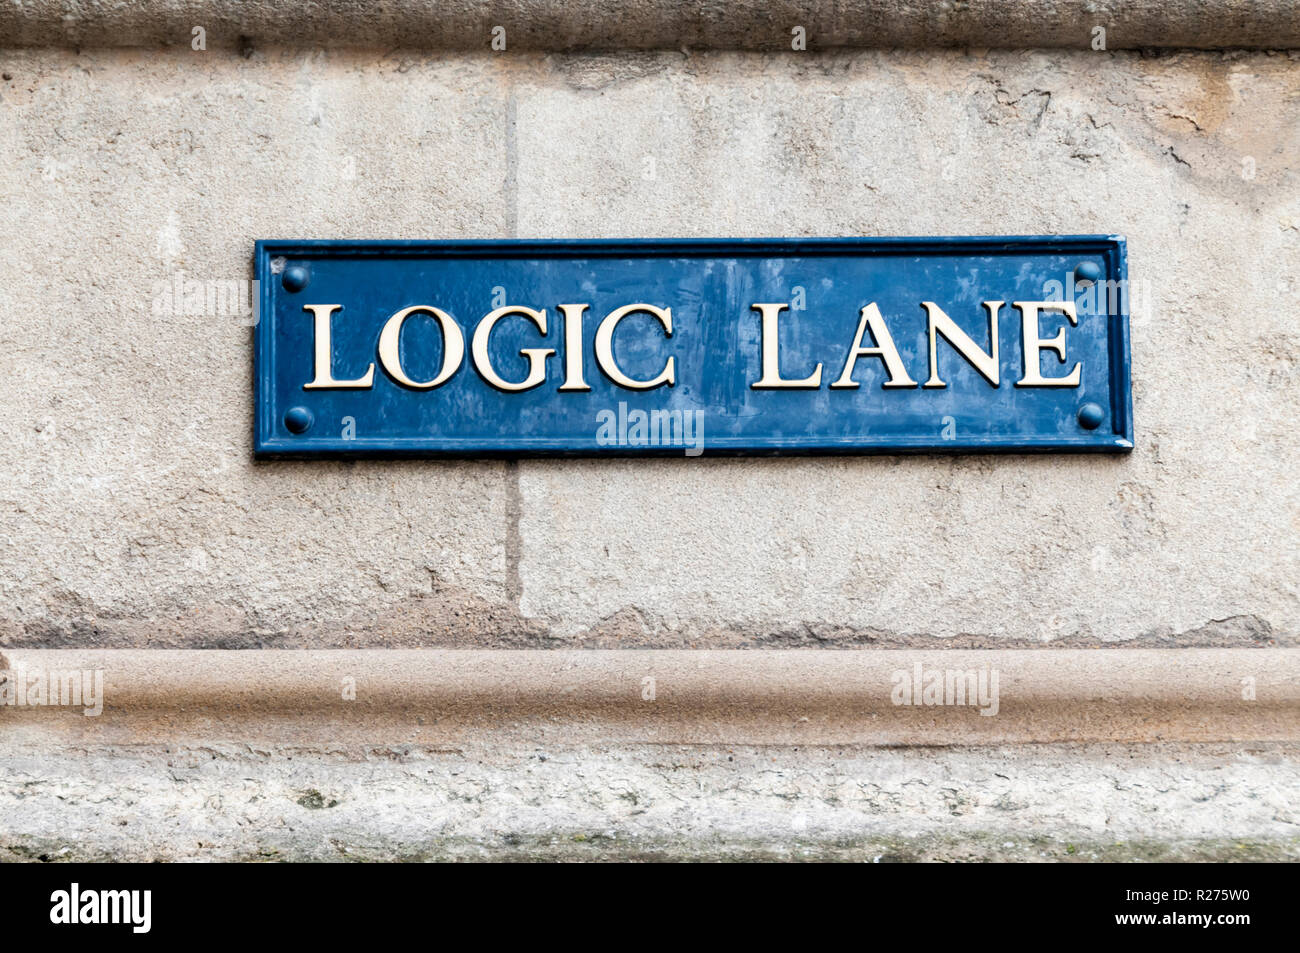 Die Benennung einer Straße Zeichen für Logik Lane in Oxford. Stockfoto